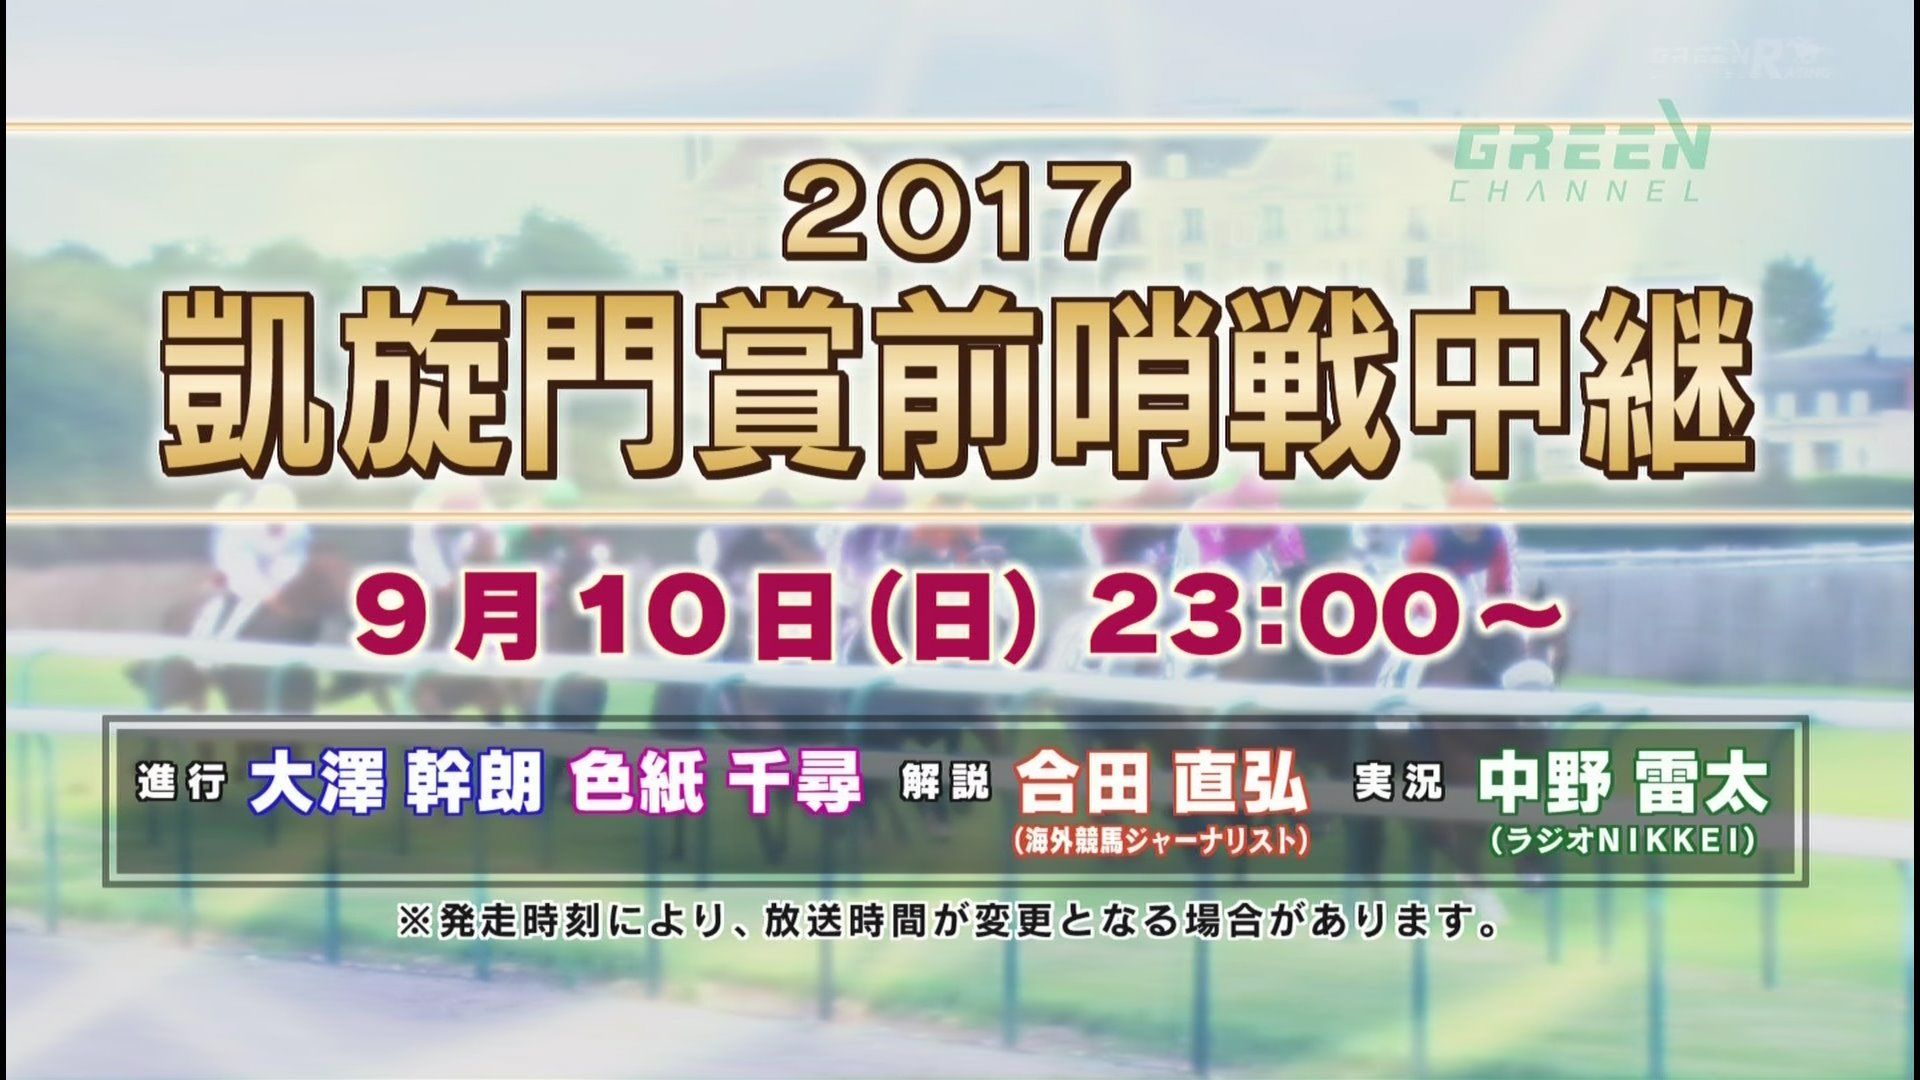 【競馬】凱旋門賞前哨戦フォワ賞(9/10) サトノダイヤモンド・サトノノブレスが出走予定